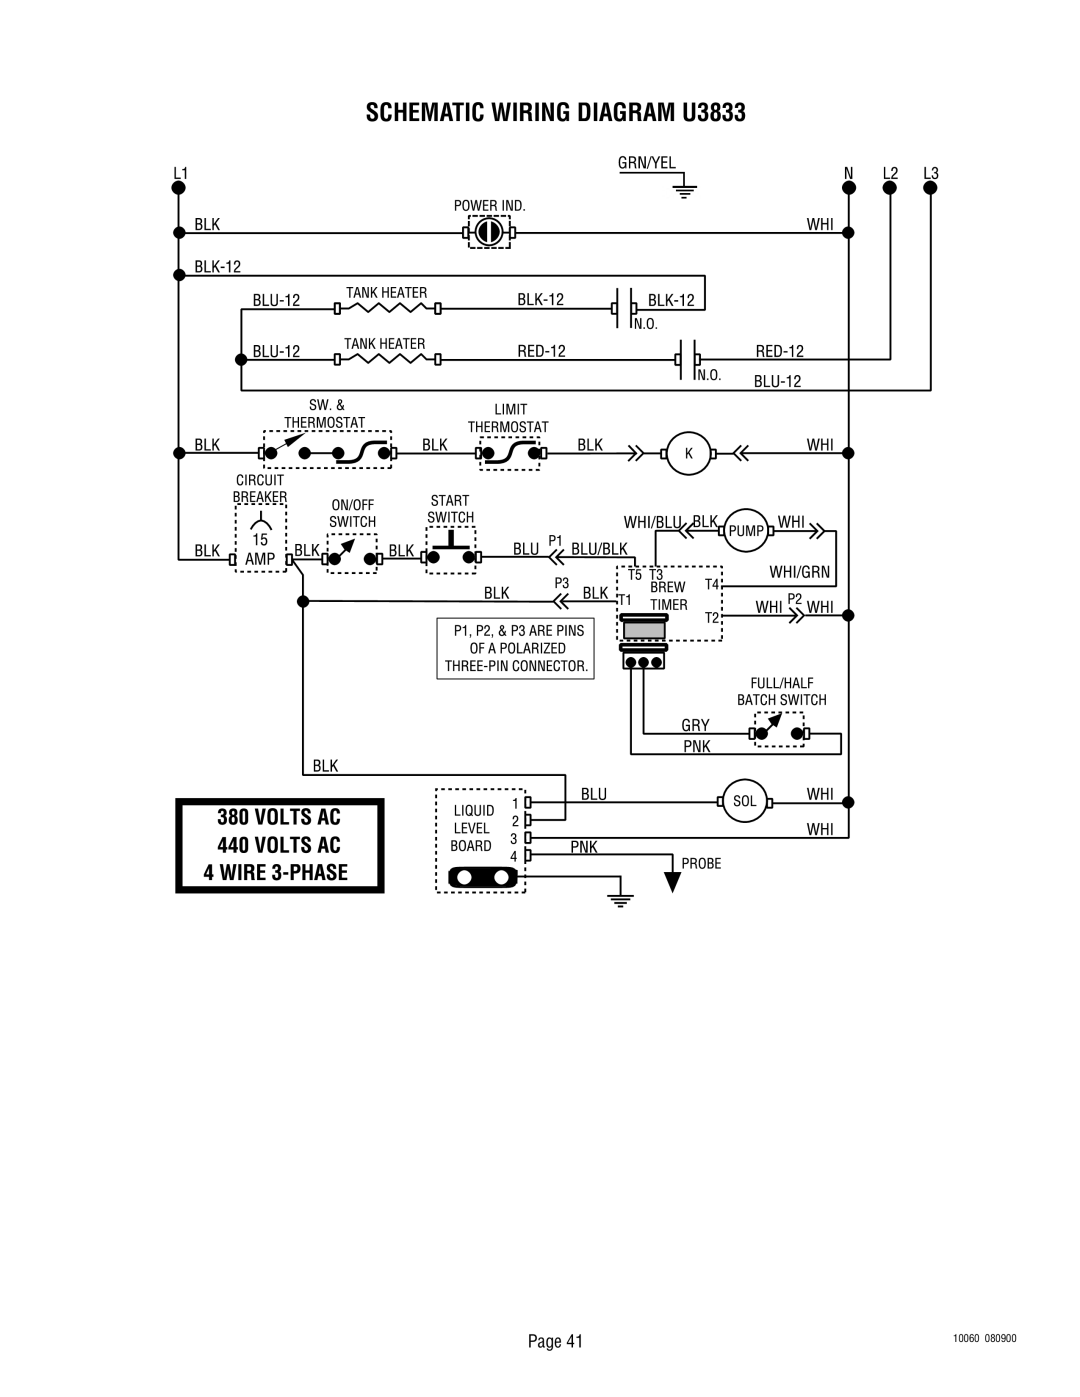 Bunn U3A service manual SCHEMATIC WIRING DIAGRAM U3833, Page, 10060, 080900 